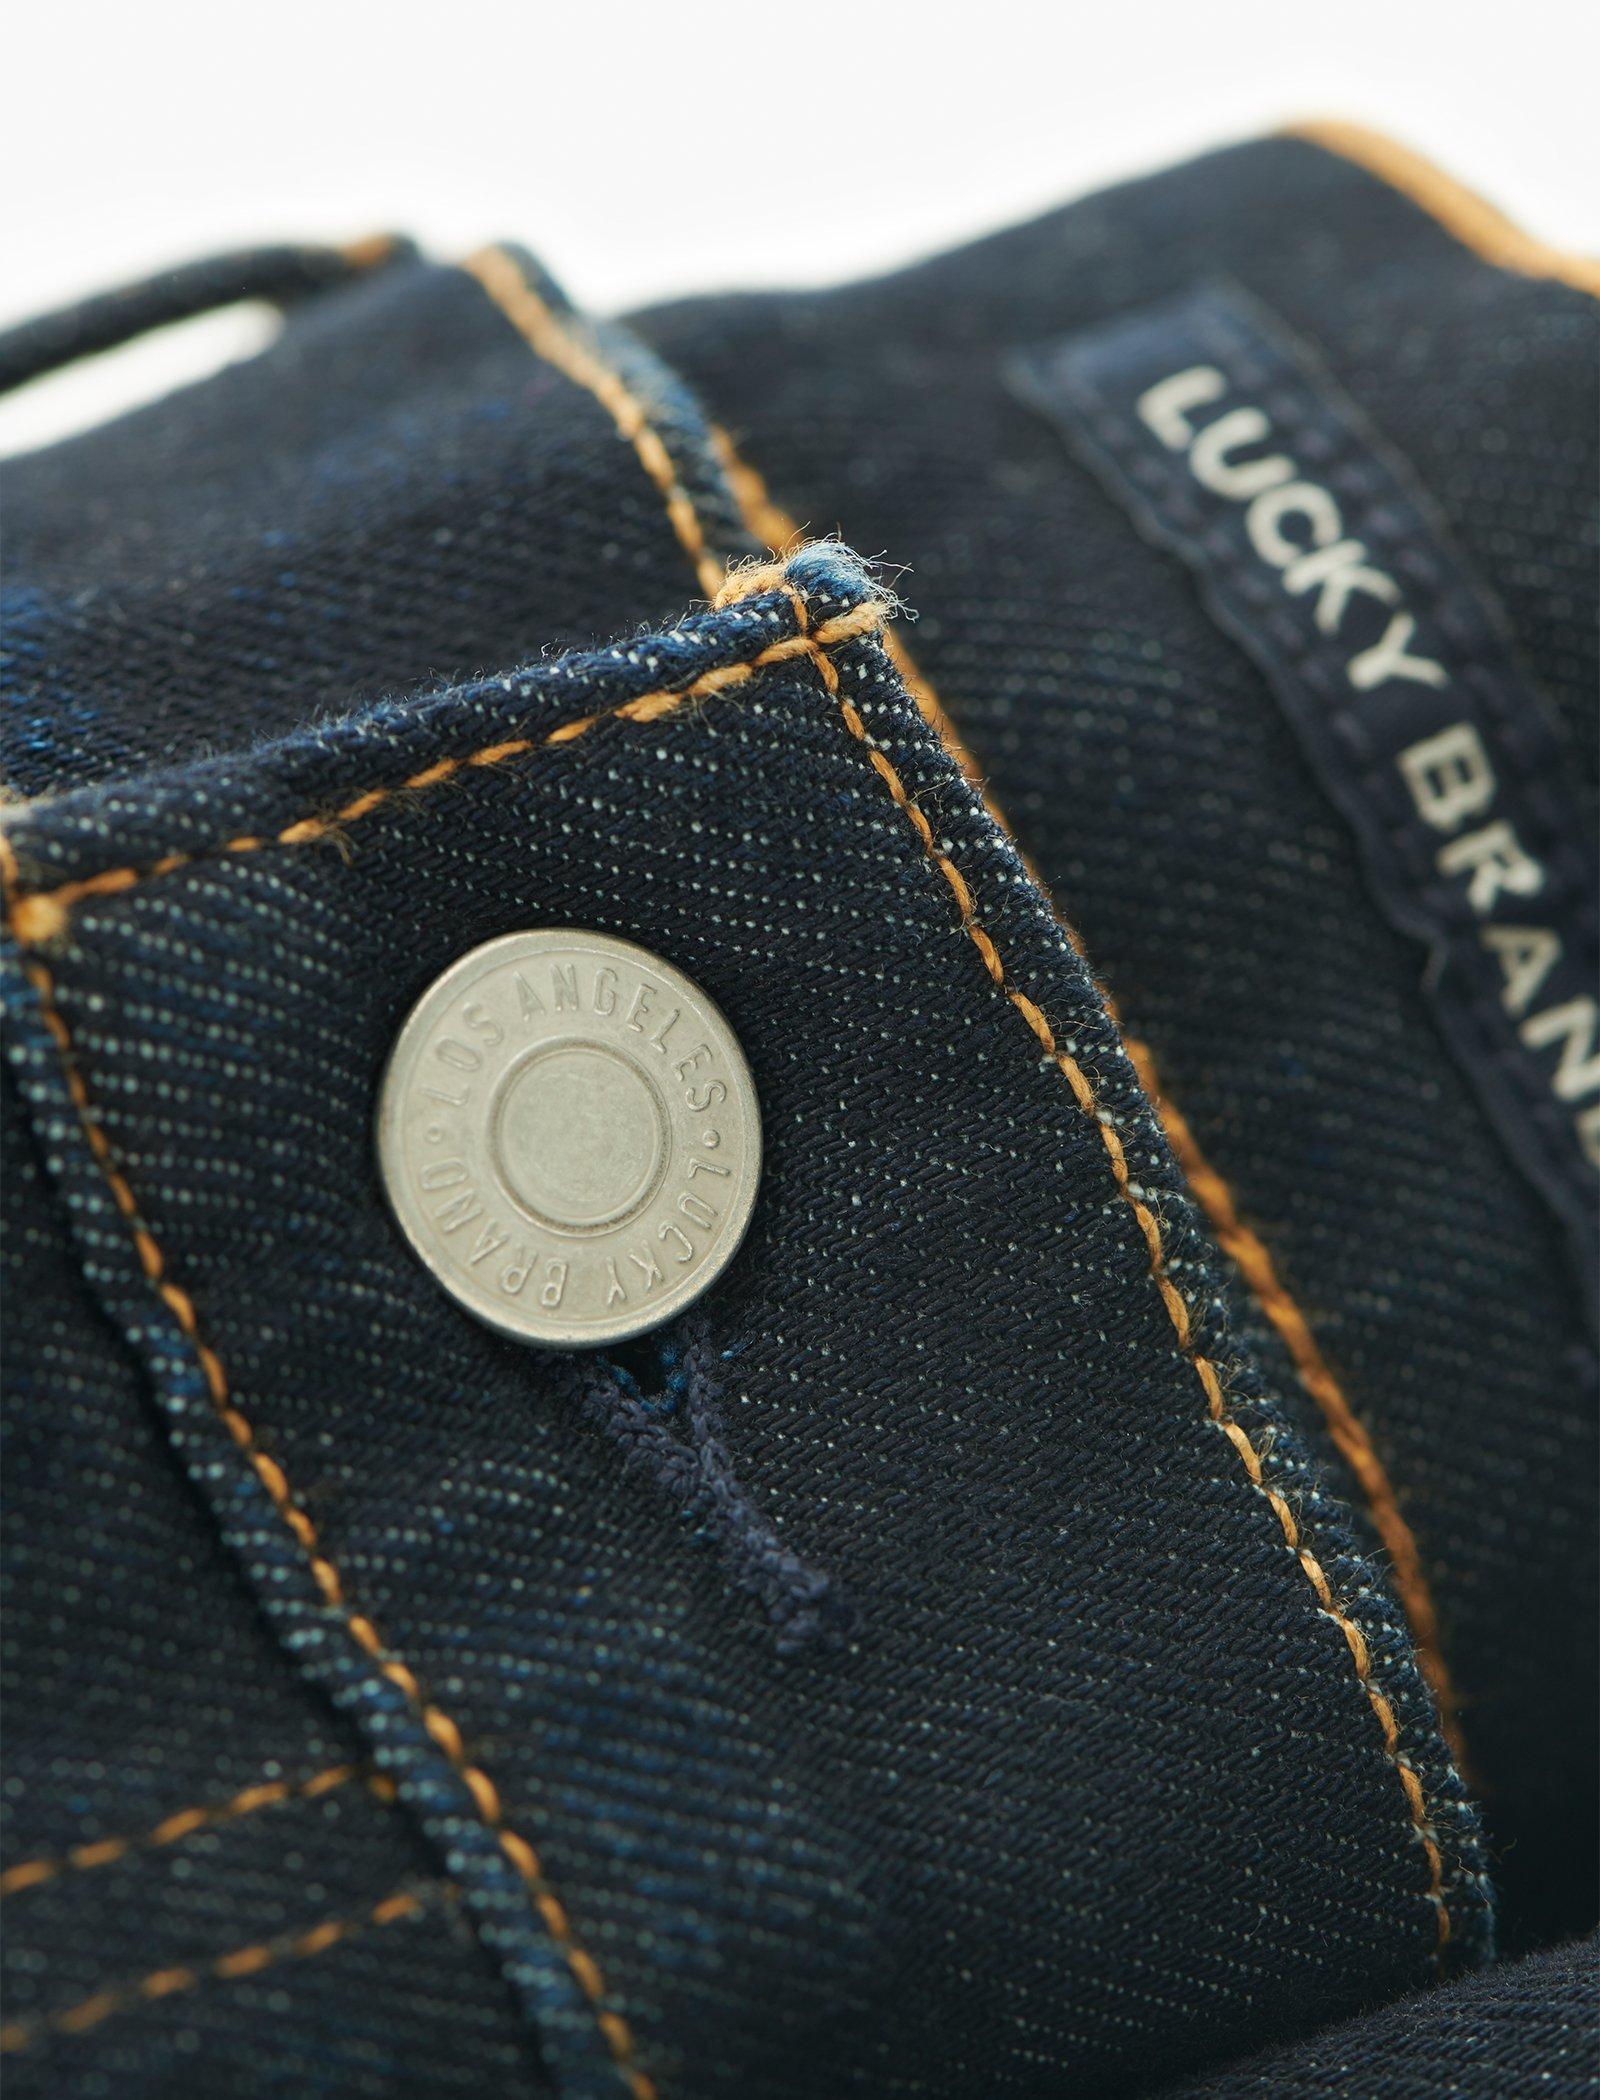 lucky brand men's jeans 363